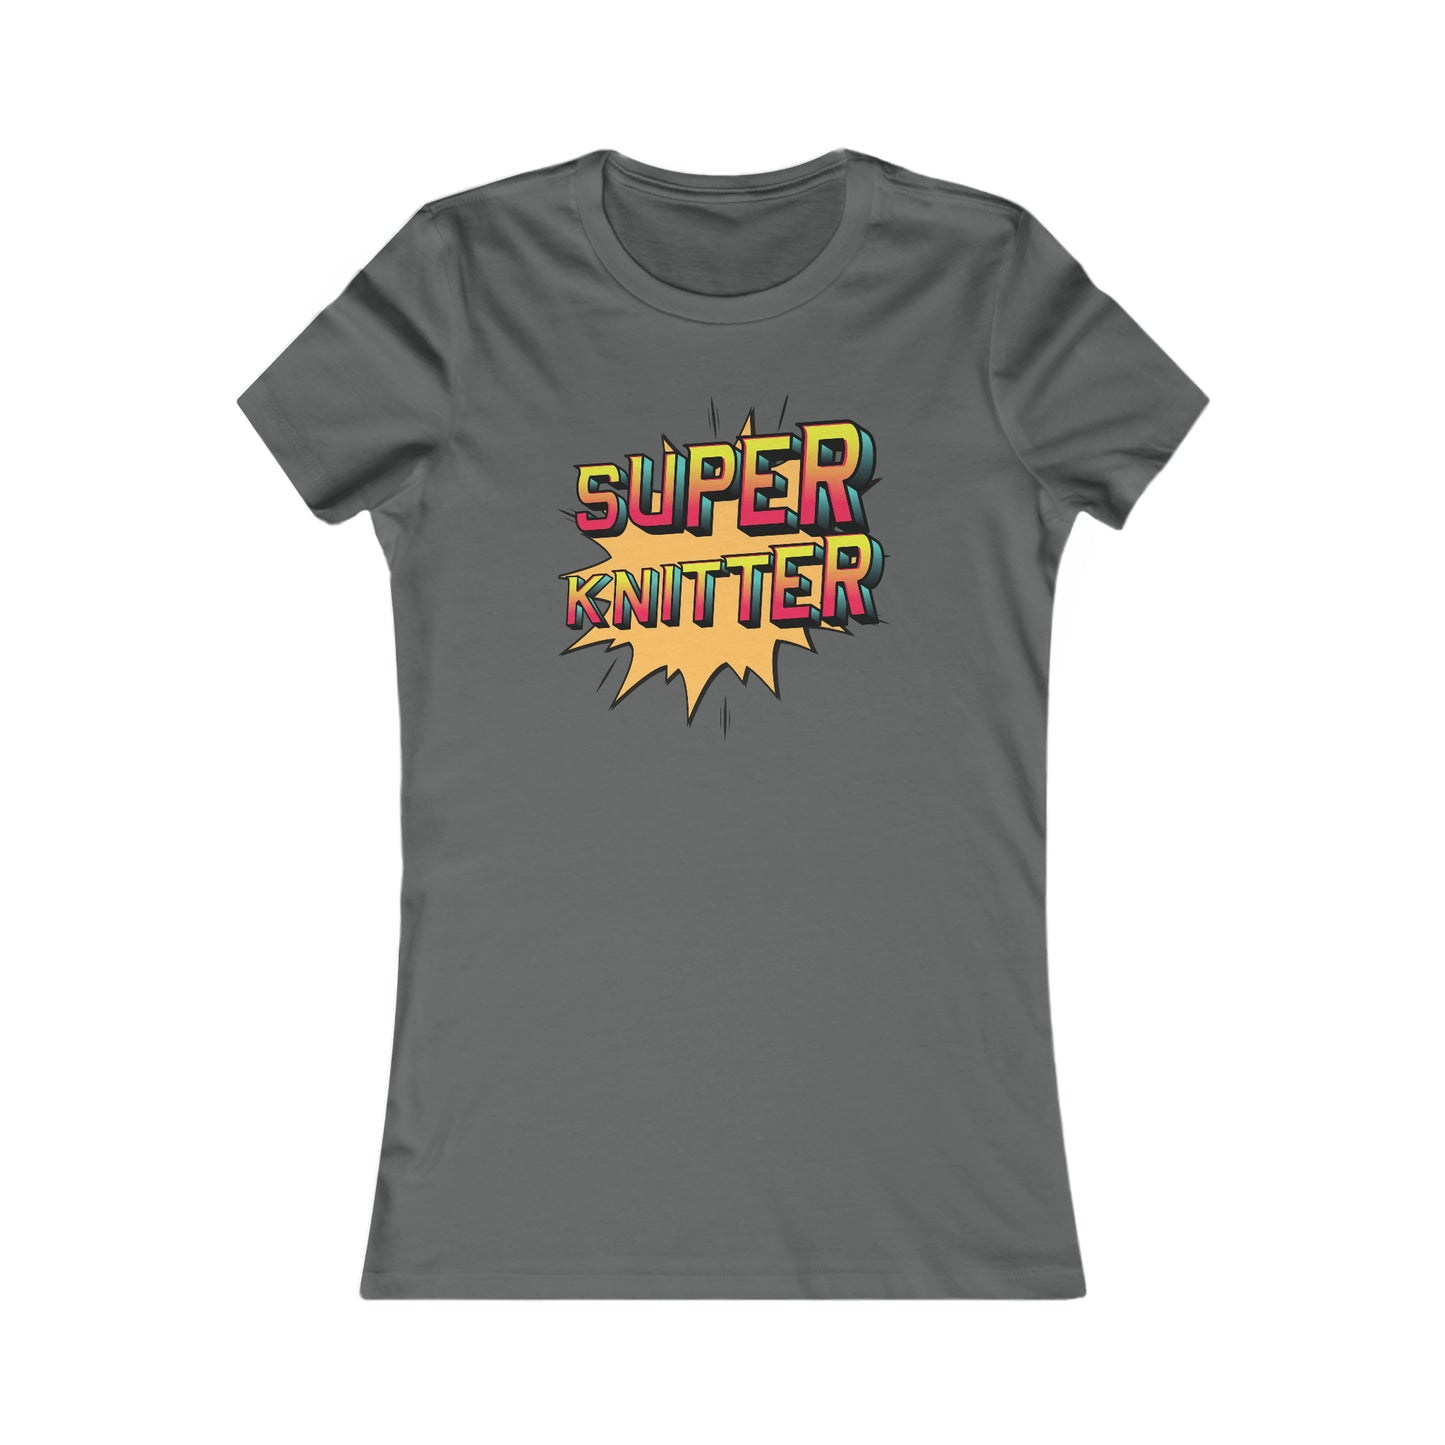 Super Knitter Women's T Shirt